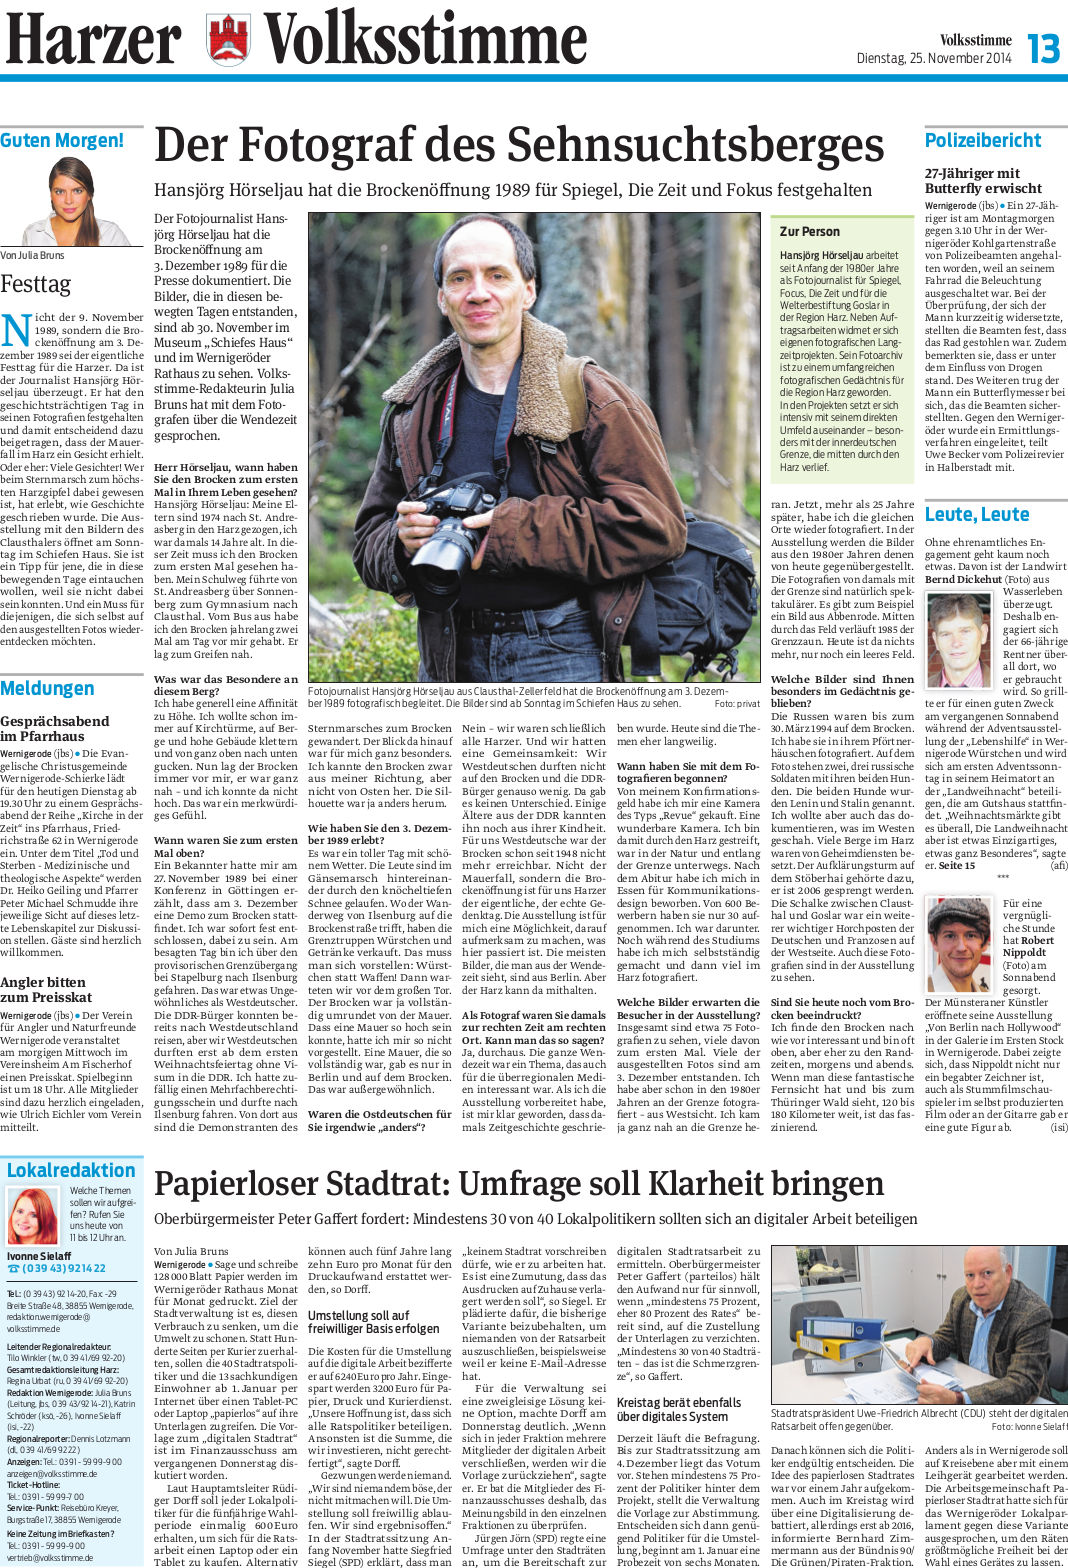 Volksstimme-Artikel über Hansjörg Hörseljau, den Fotografen, der die Wiedervereinigung auf dem Brocken begleitet hat. Autor: Julia Bruns